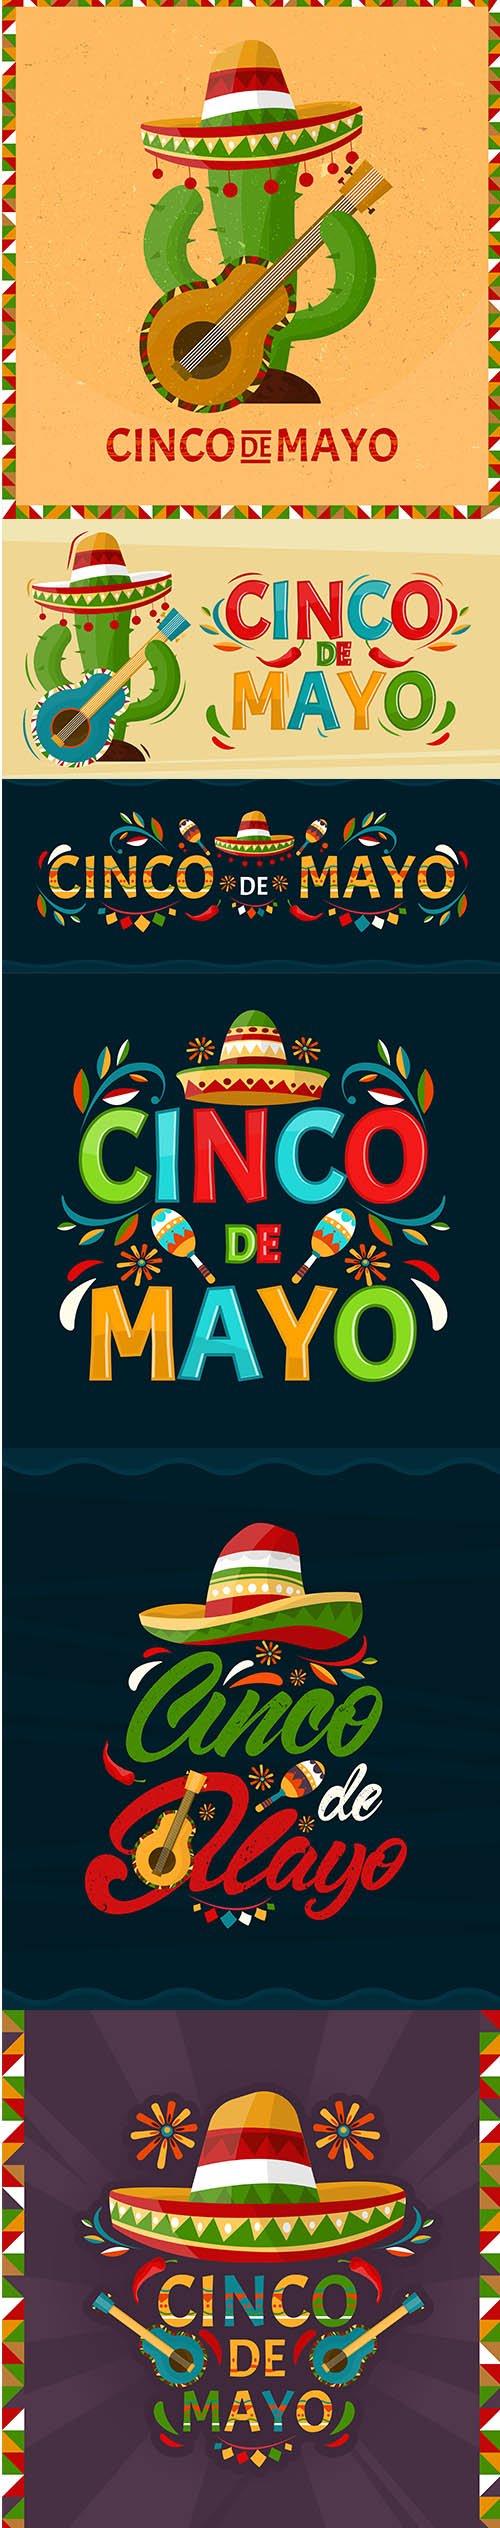 Cinco de Mayo Holiday Mexico Illustrations